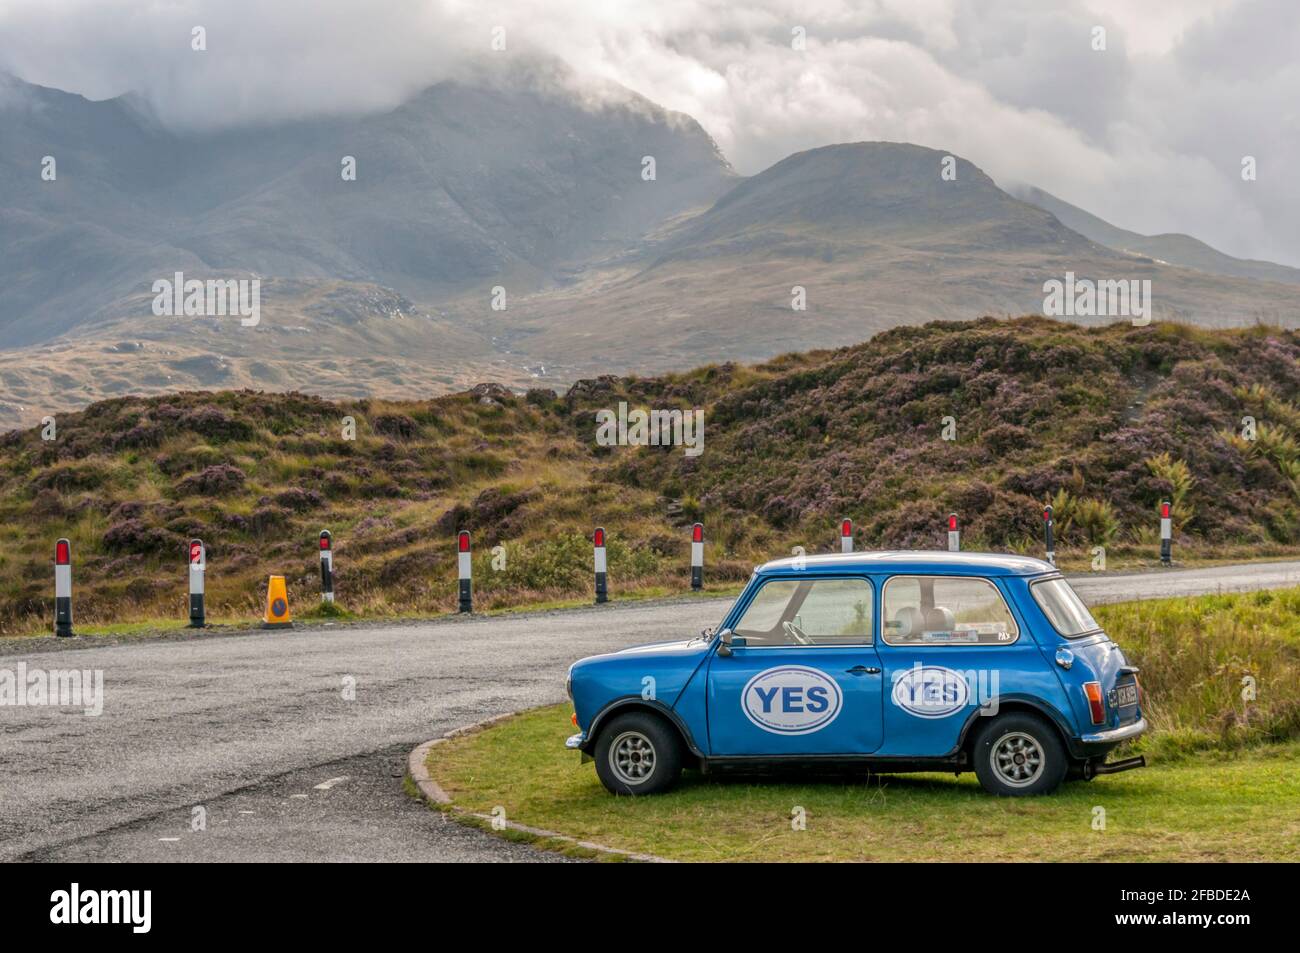 Une mini voiture sur l'île de Skye faisant la promotion d'un Oui, lors du référendum sur l'indépendance en Écosse de 2014 Banque D'Images